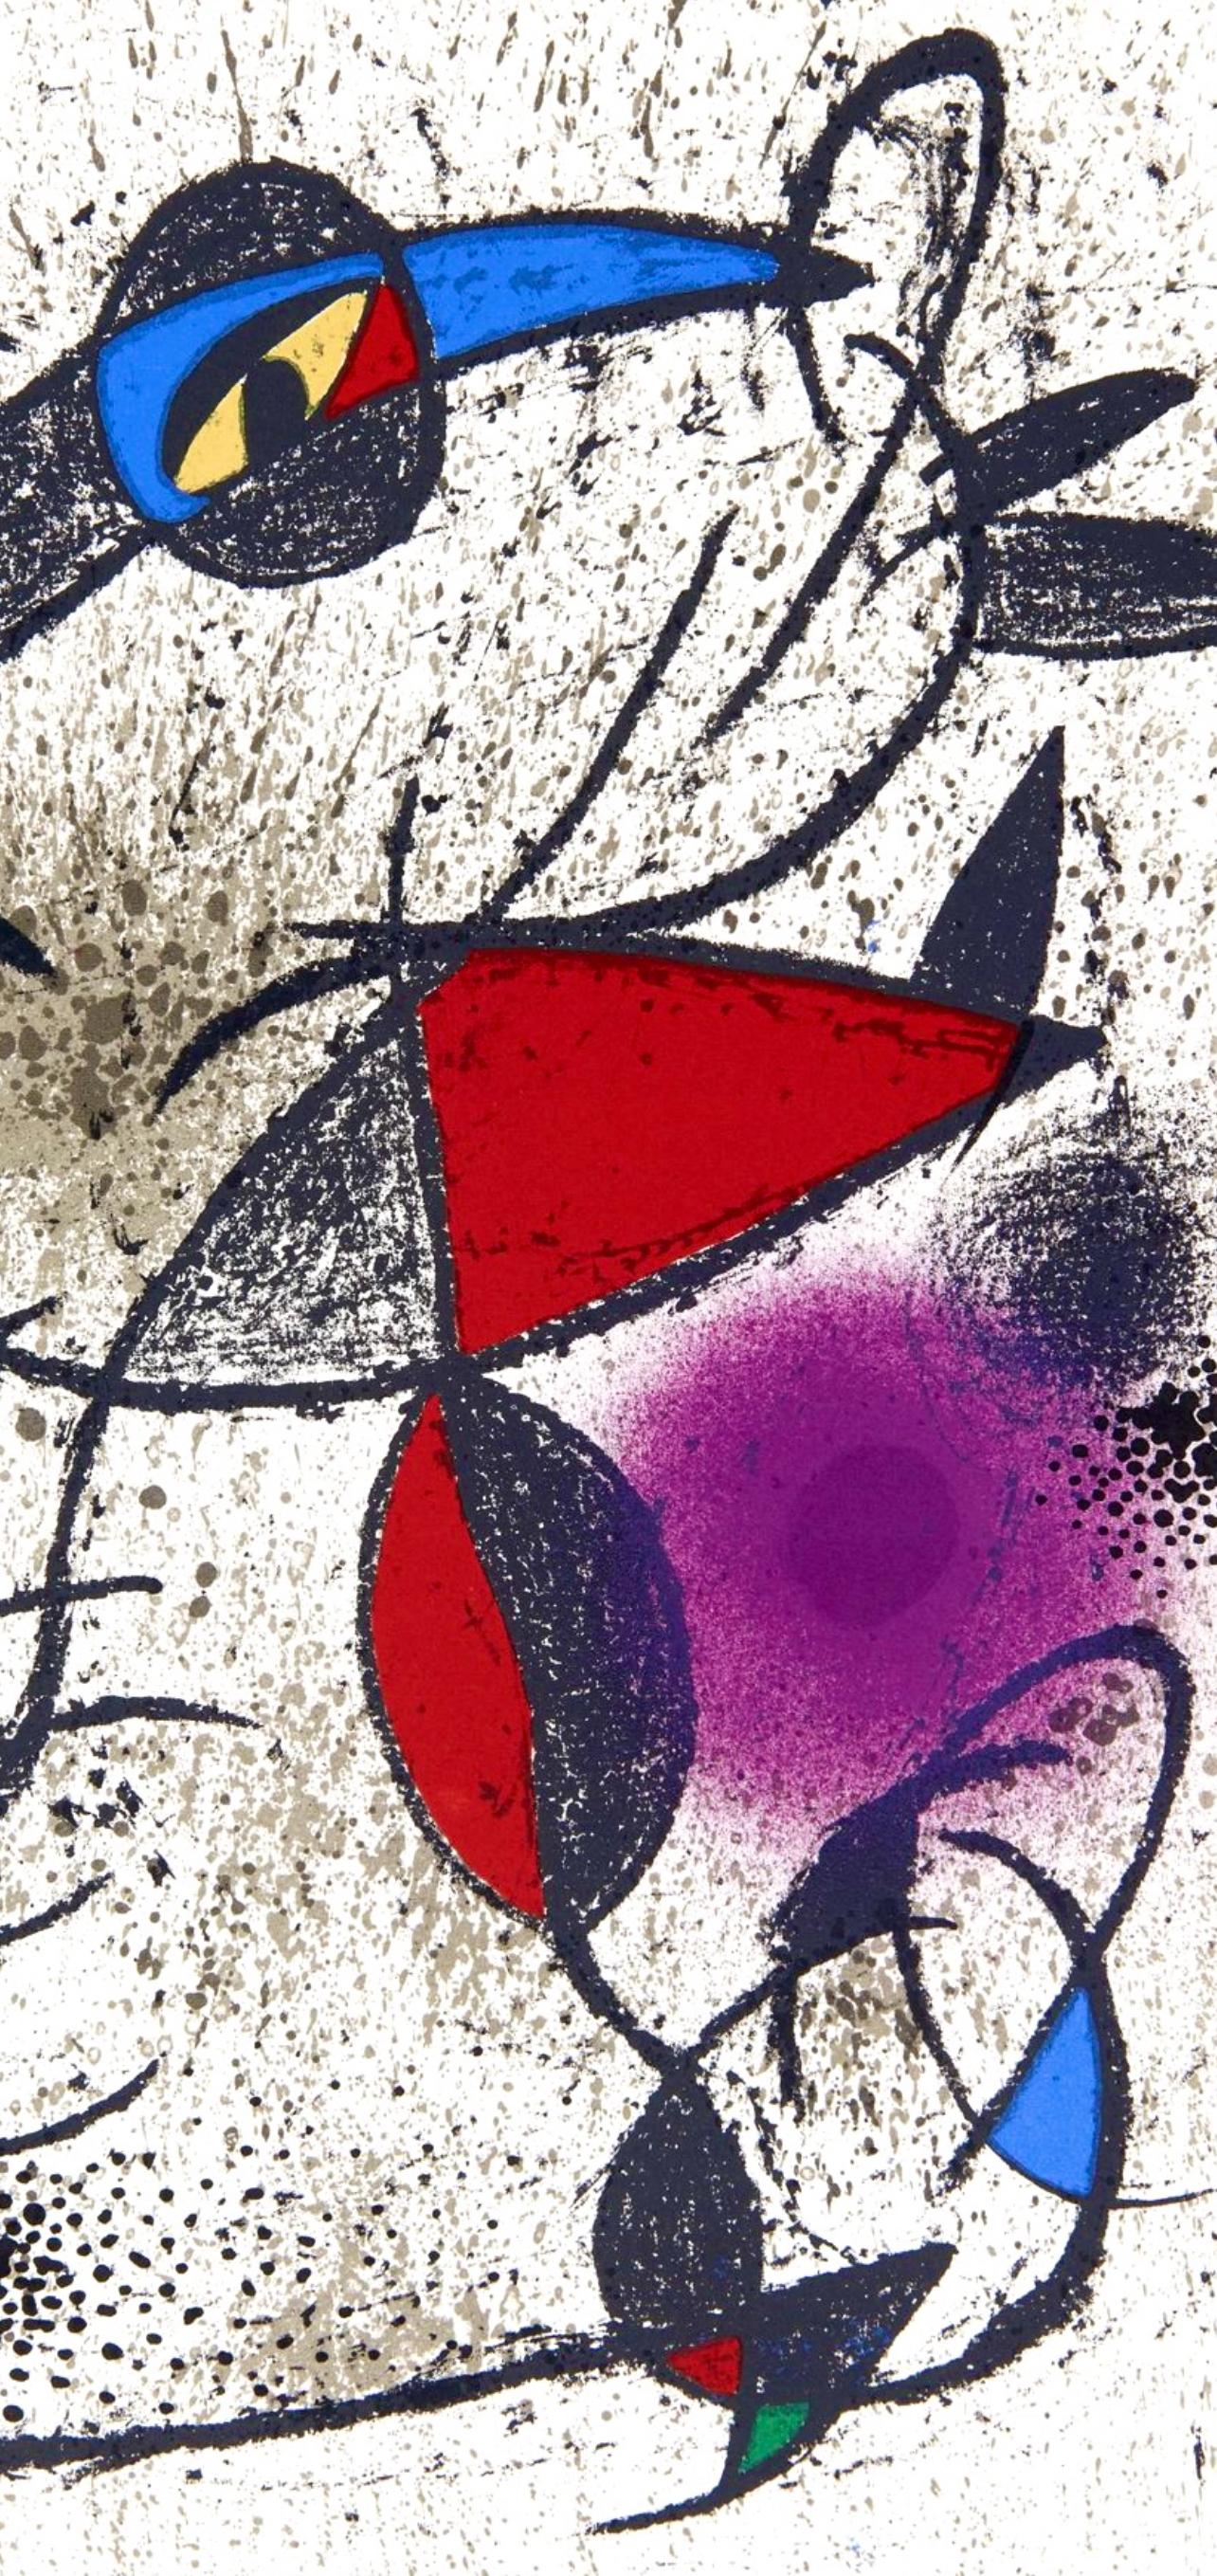 Miró, Faillie du calcaire, Souvenirs et portraits d'artistes (after) - Modern Print by Joan Miró